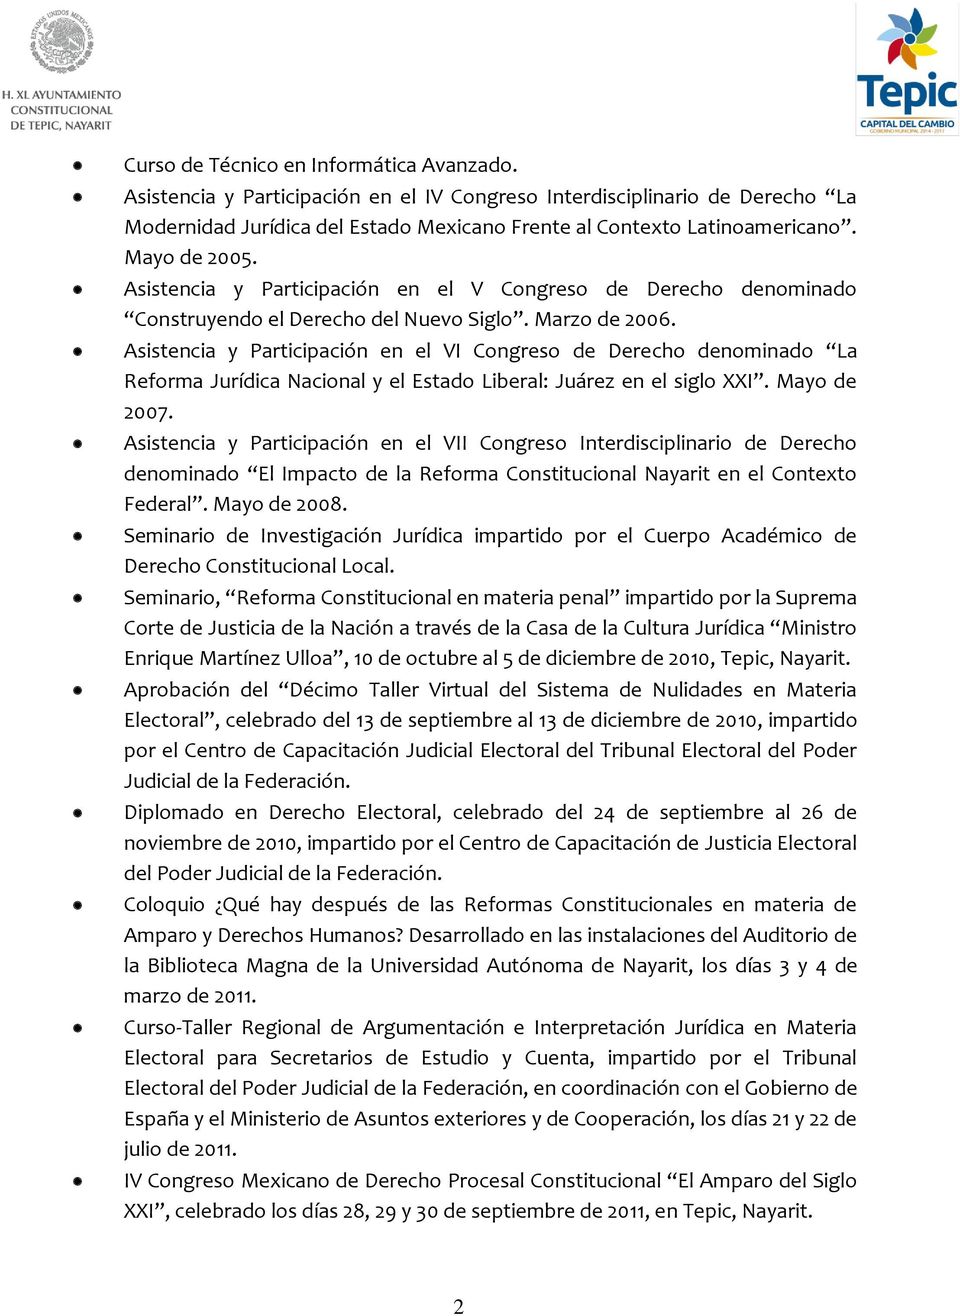 Asistencia y Participación en el VI Congreso de Derecho denominado La Reforma Jurídica Nacional y el Estado Liberal: Juárez en el siglo XXI. Mayo de 2007.